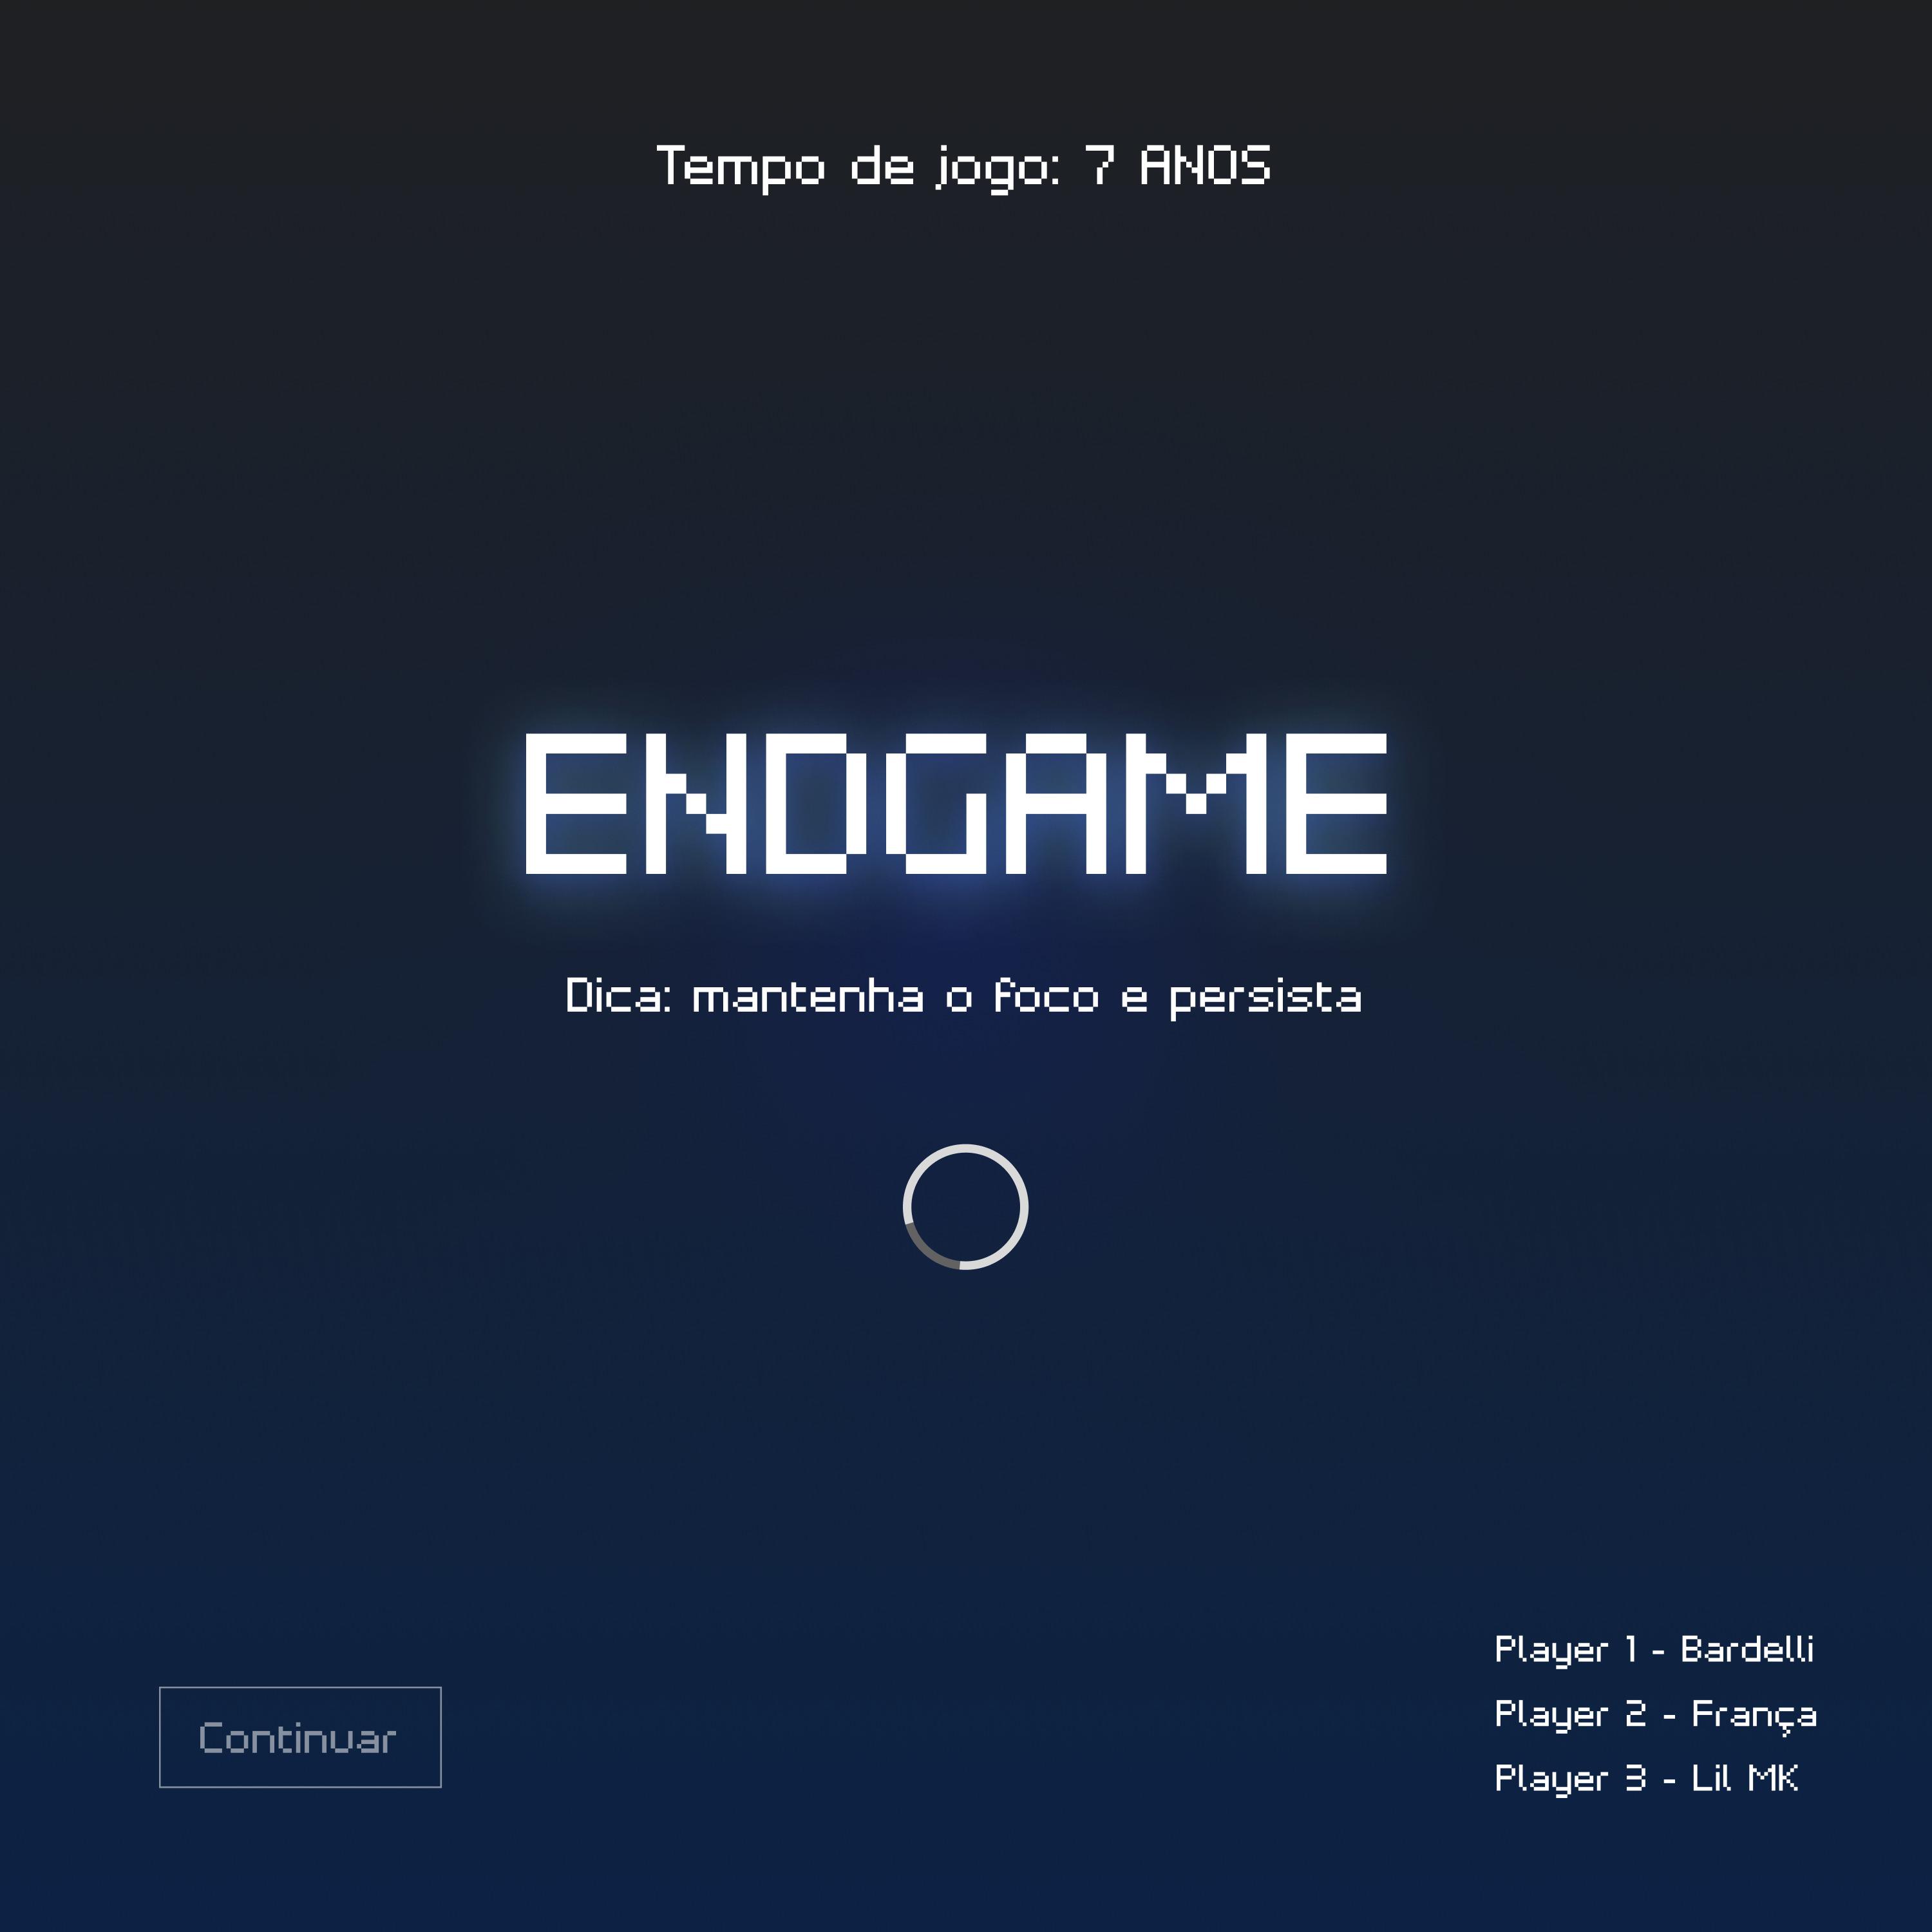 Постер альбома Endgame